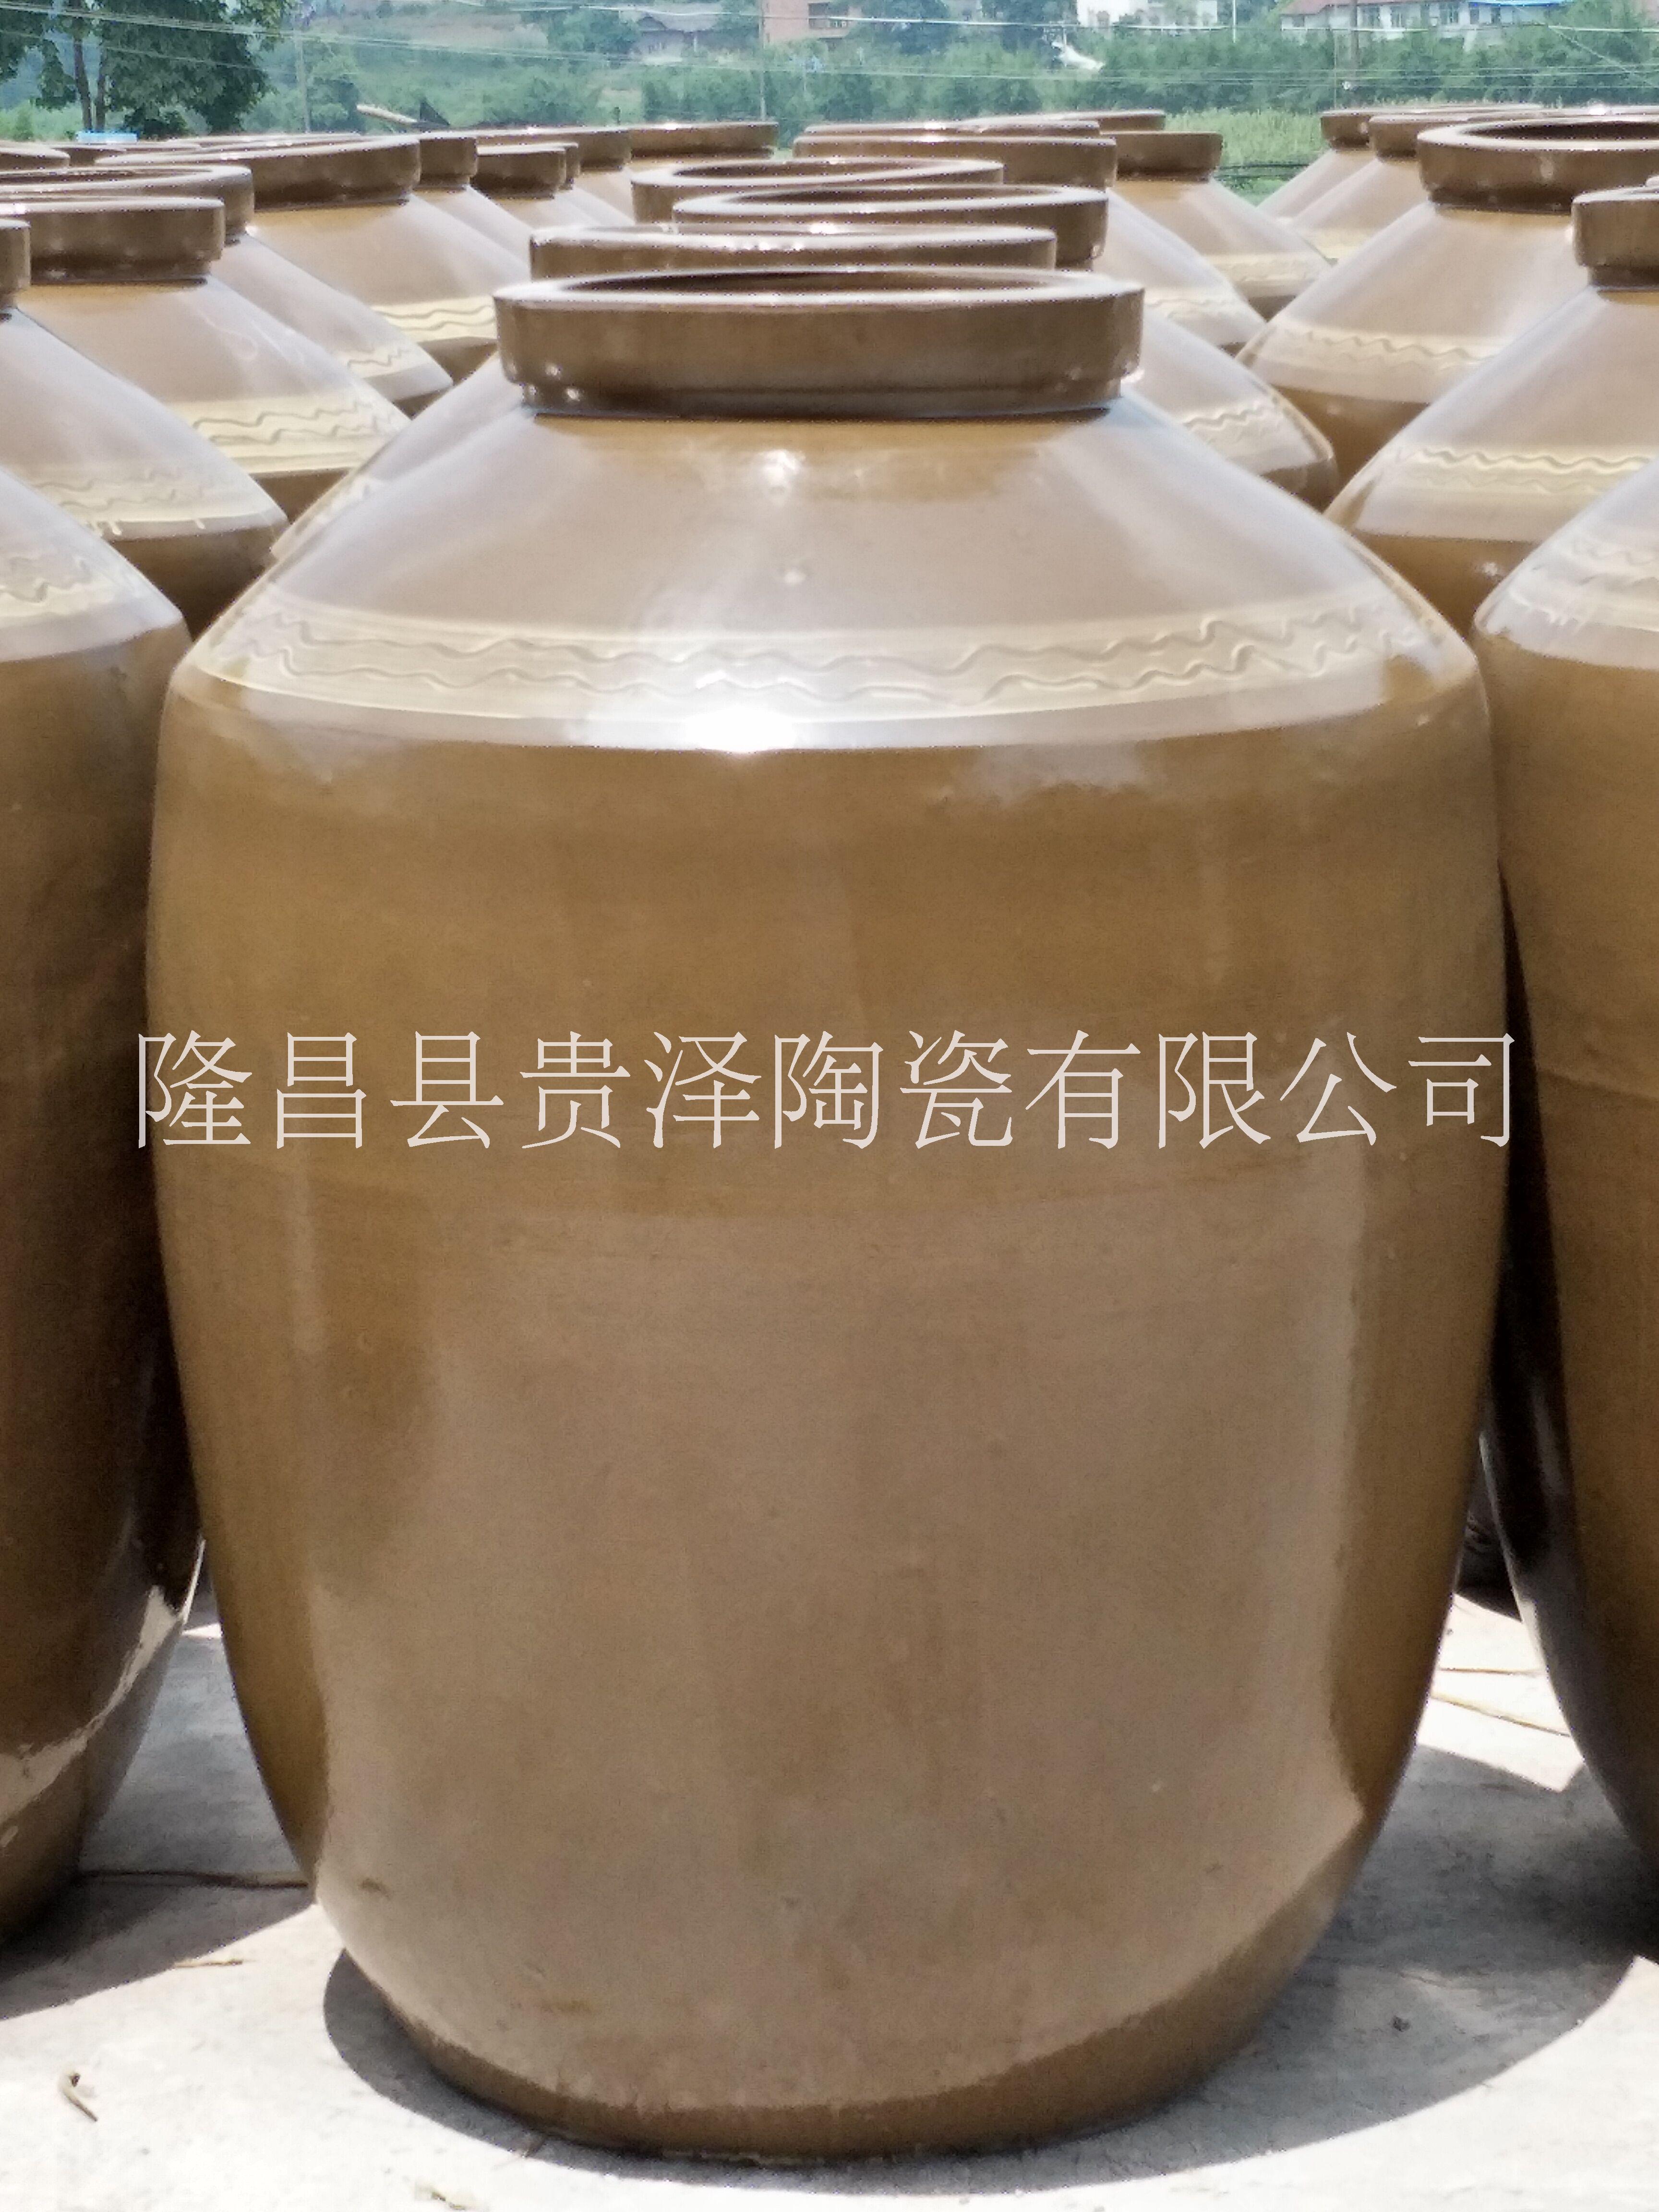 大量供应 400斤陶瓷酒坛 陶